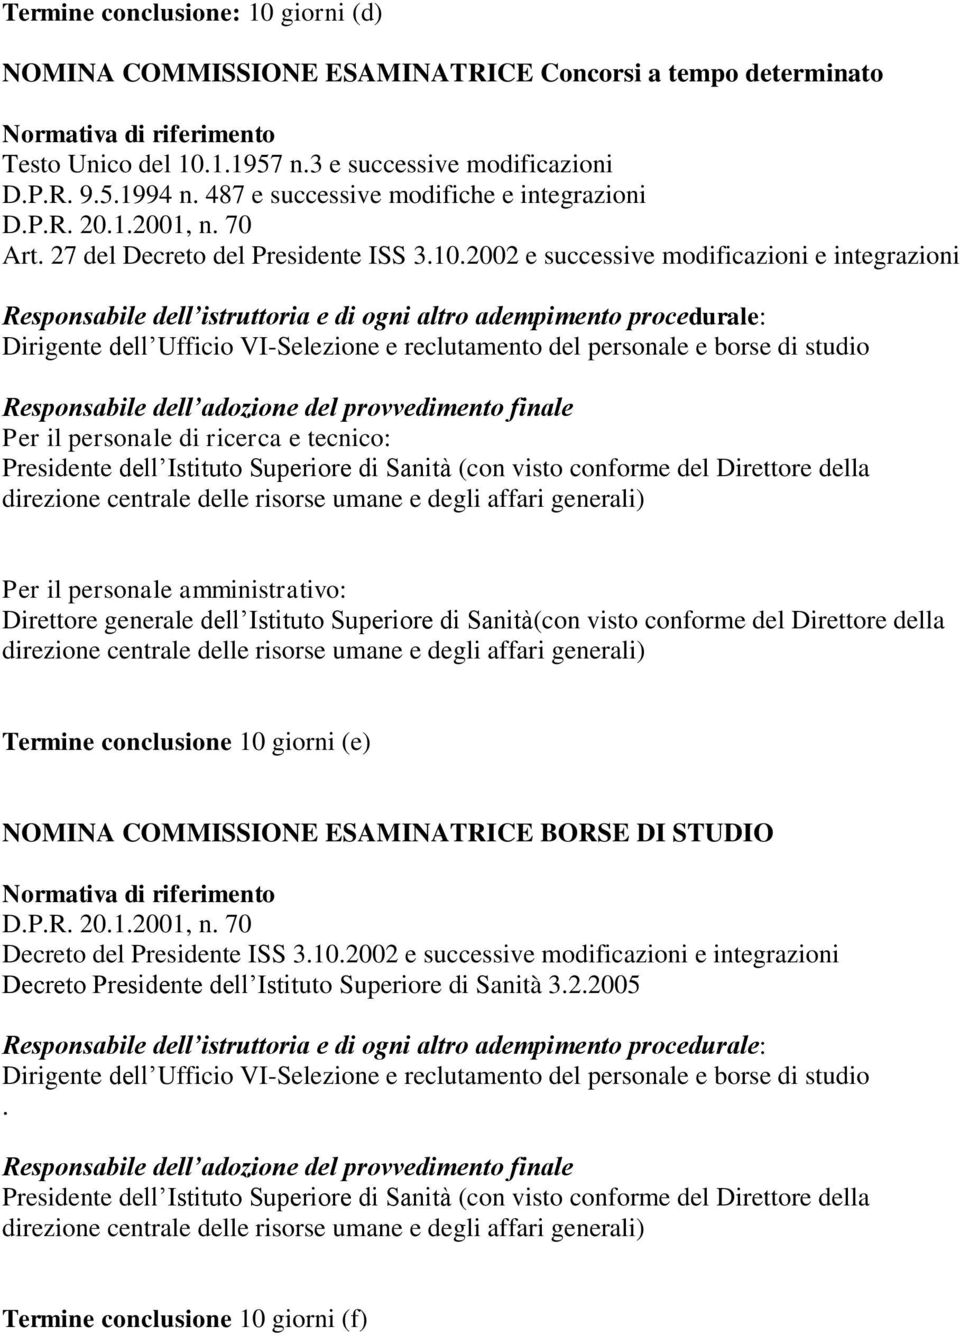 Per il personale amministrativo: Termine conclusione 10 giorni (e) NOMINA COMMISSIONE ESAMINATRICE BORSE DI STUDIO Decreto